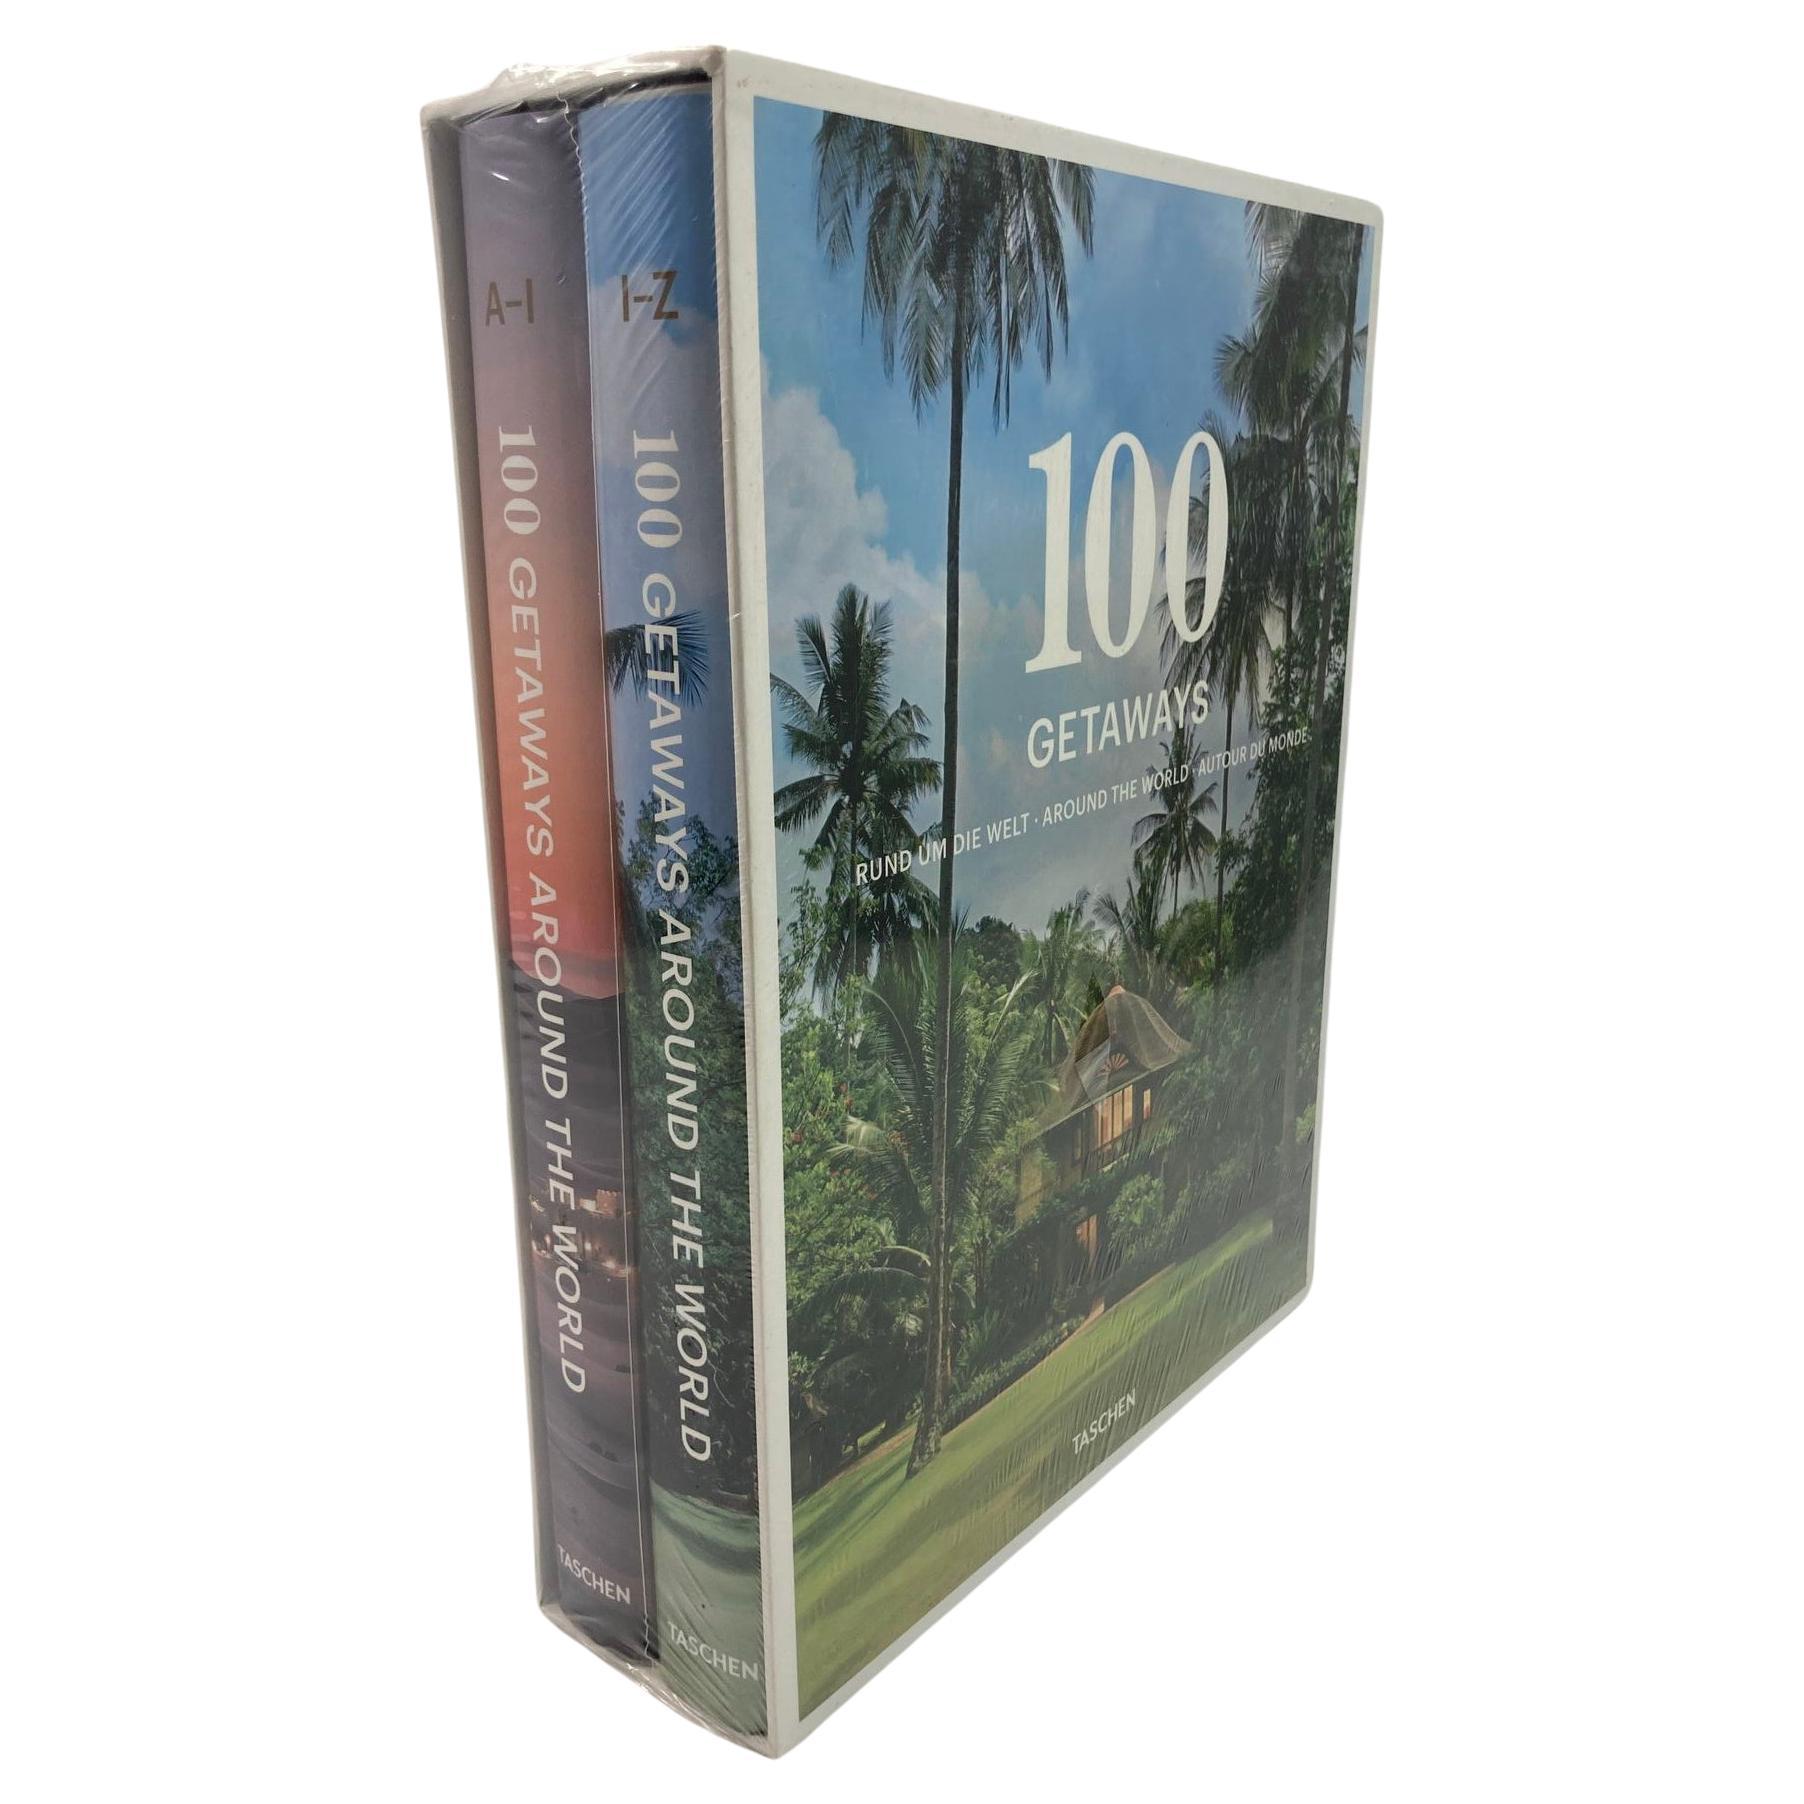 100 Getaways Around the World by Margit J. Mayer TASCHEN Hardcover 2014 For Sale